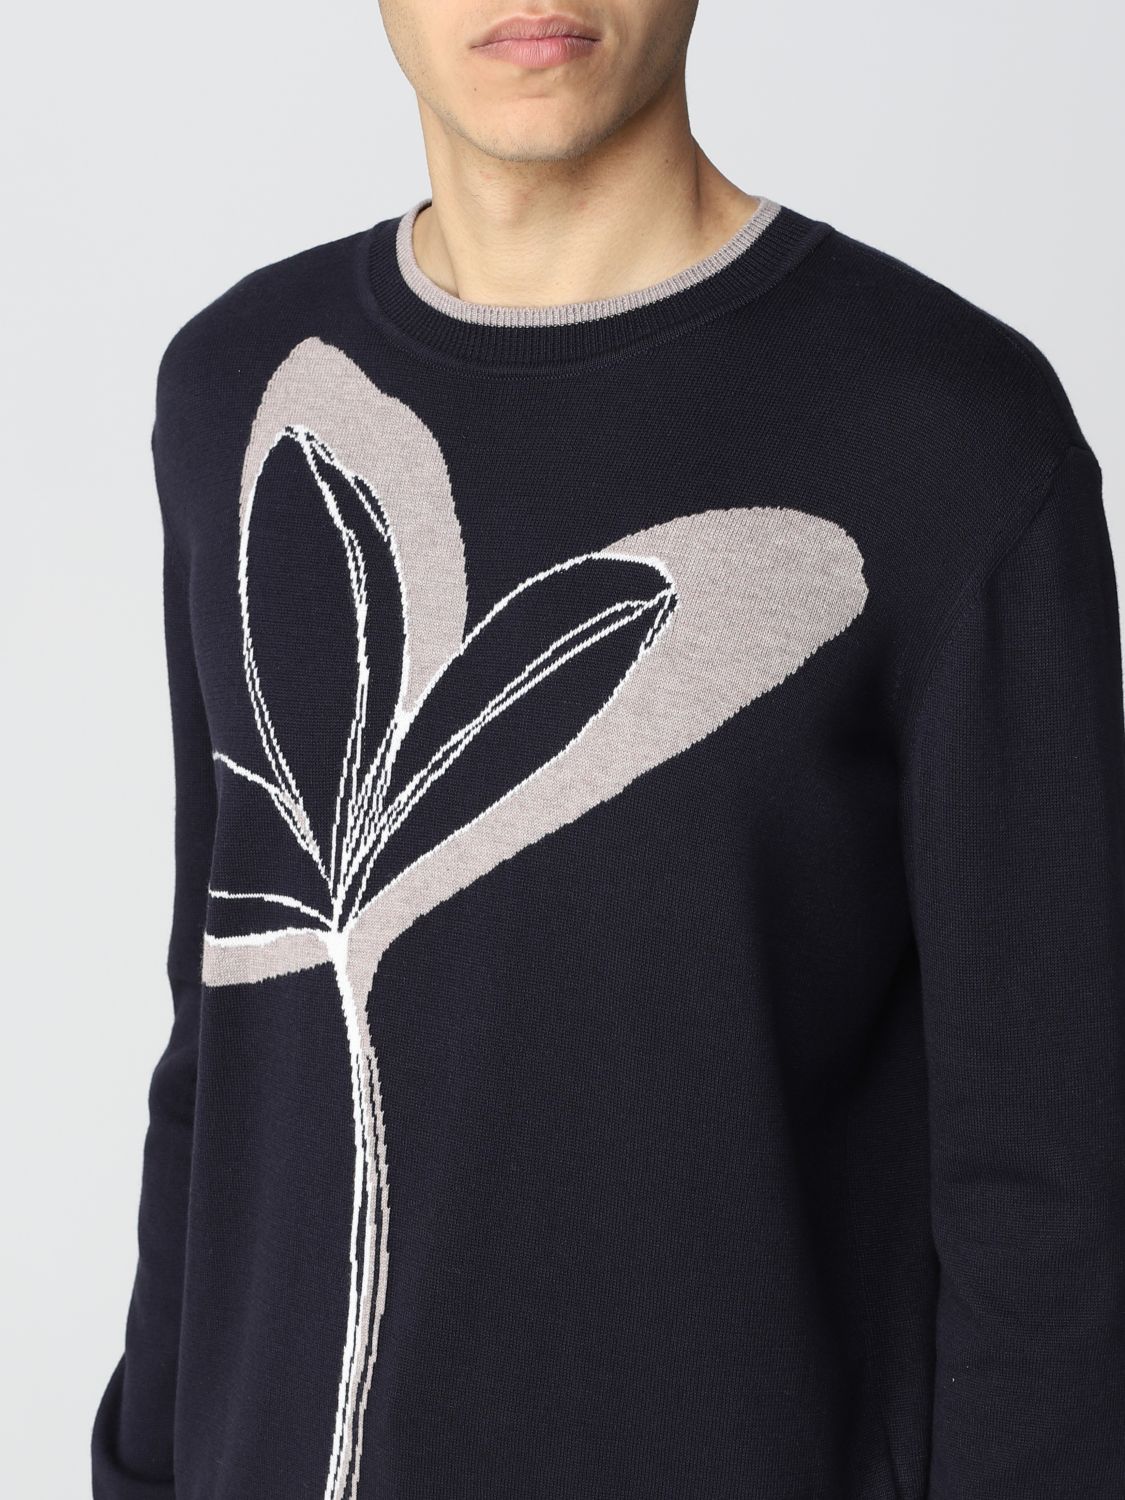 Sweater Giorgio Armani: Giorgio Armani cotton and cashmere sweater navy 3